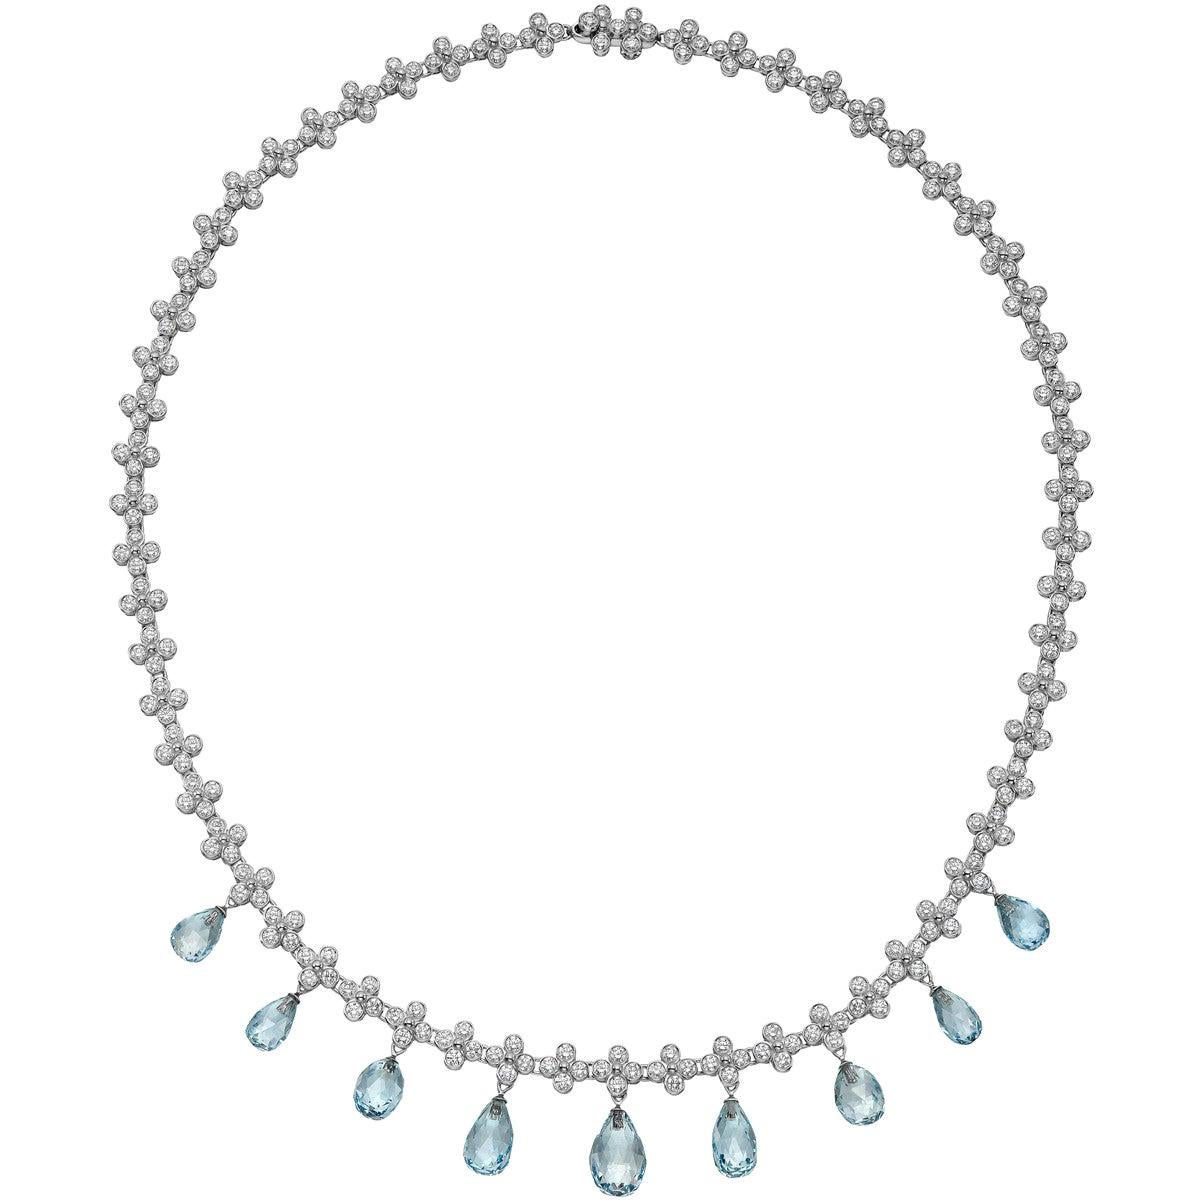 Tiffany & Co. Diamond and Aquamarine Fringe "Lace" Necklace